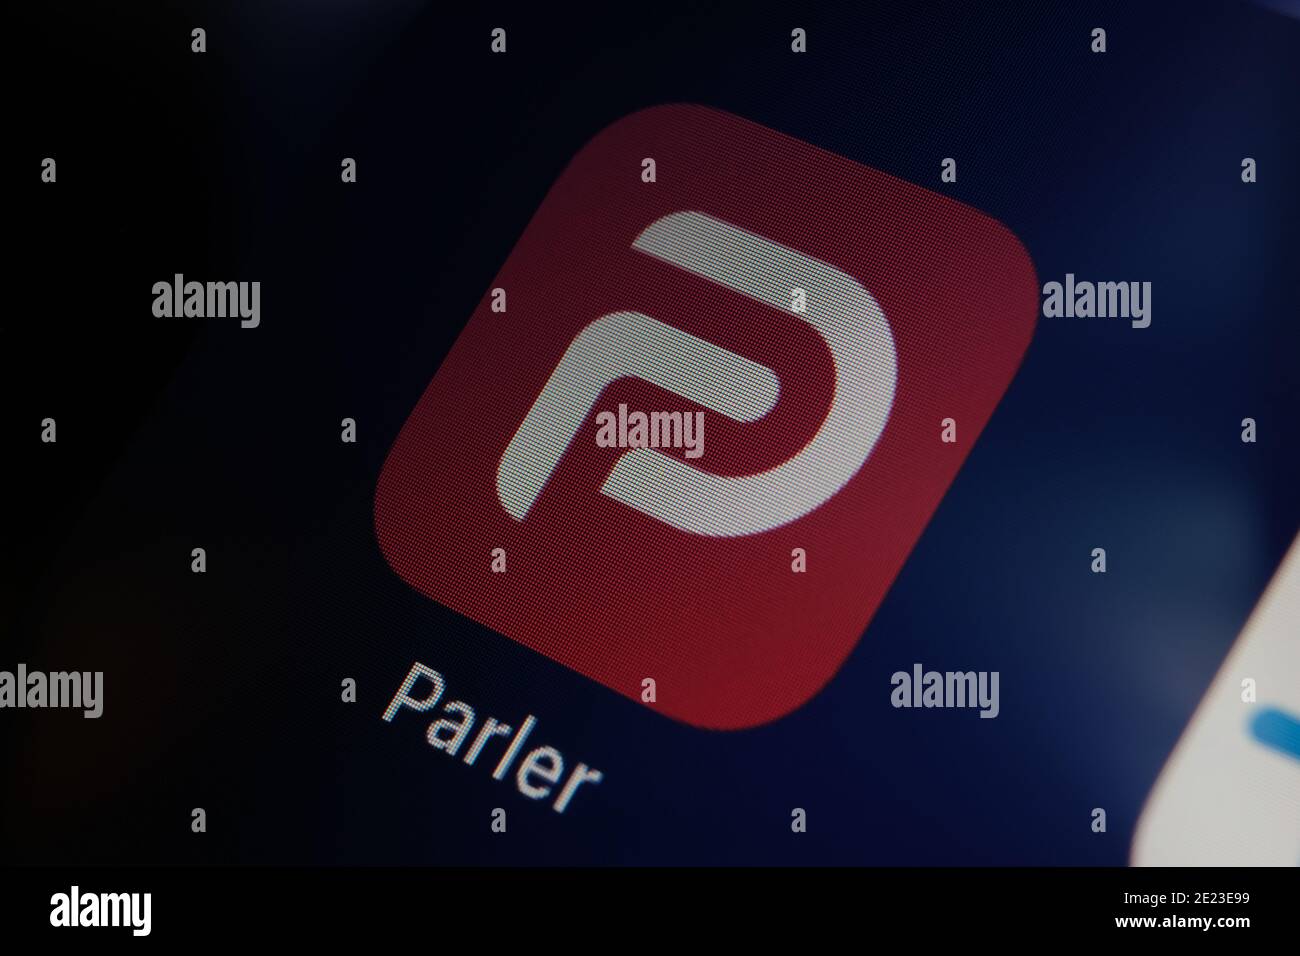 Logo de l'application Parler visible sur l'écran de l'iPad. Parler est une plateforme de médias sociaux interdite aux États-Unis. Banque D'Images